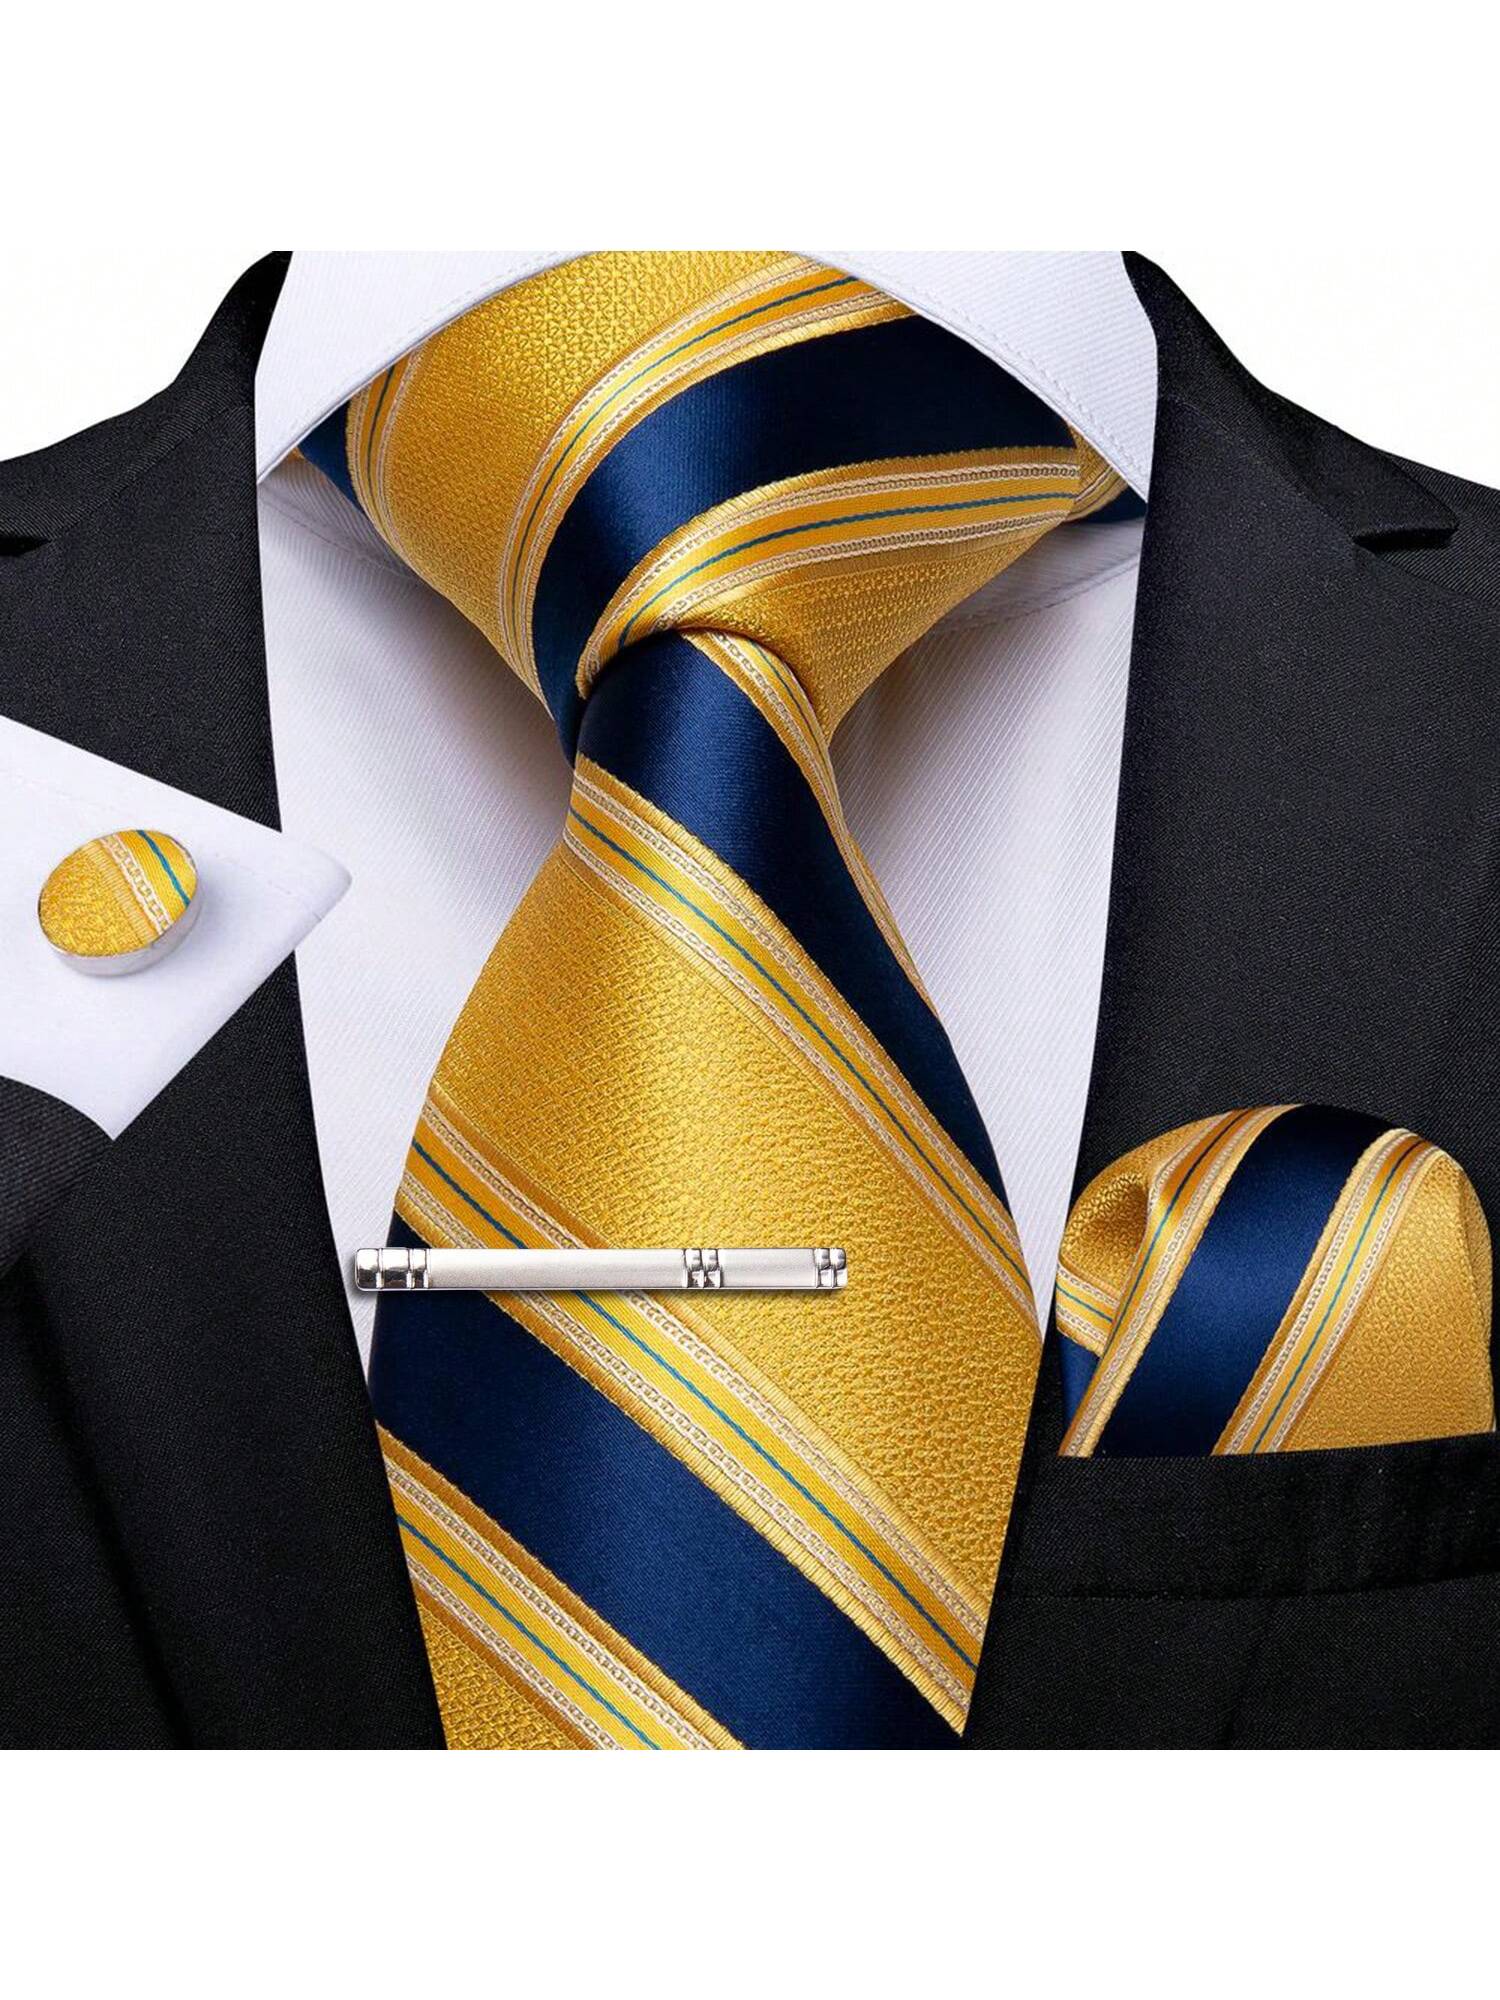 DiBanGu мужской галстук шелковый красный синий однотонный свадебный галстук карманные квадратные запонки зажим набор Пейсли, желтый синий галстук с орнаментом benjamin james 811489